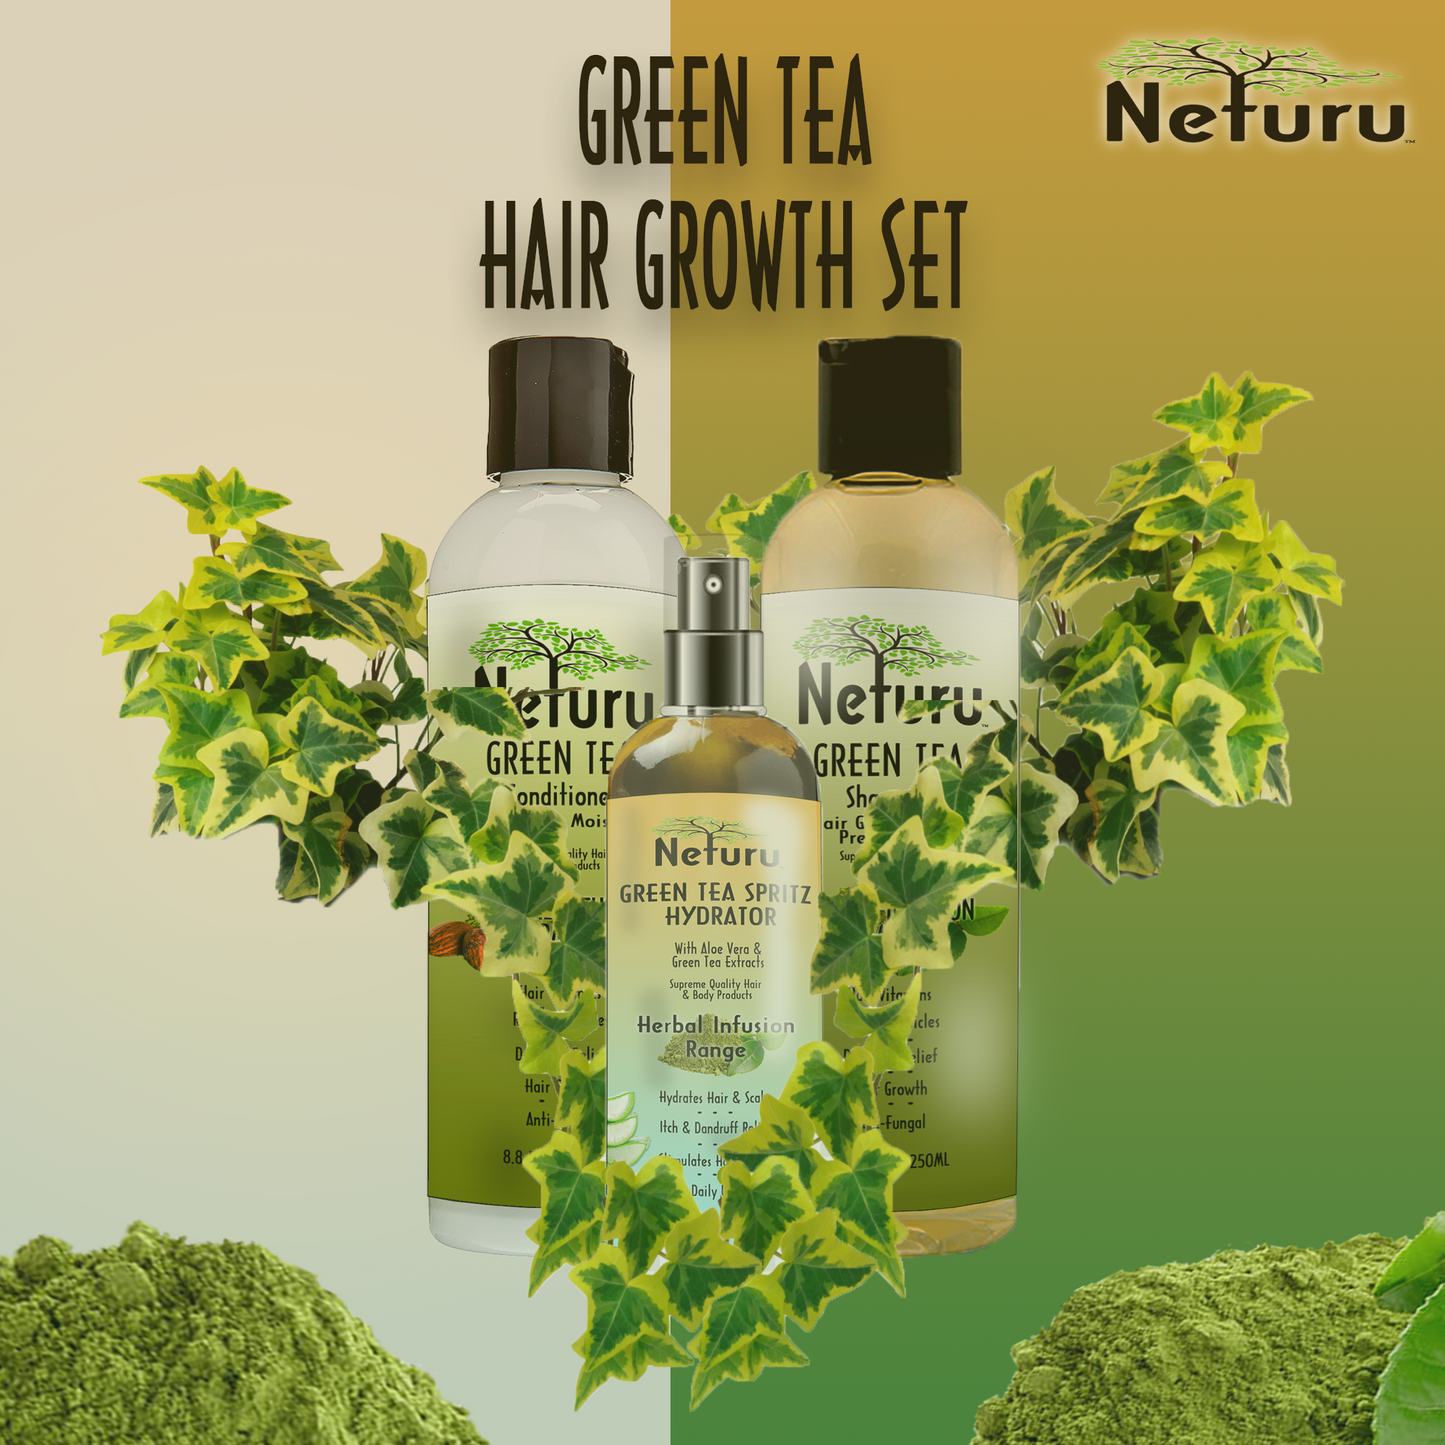 Green Tea Hair Growth Set